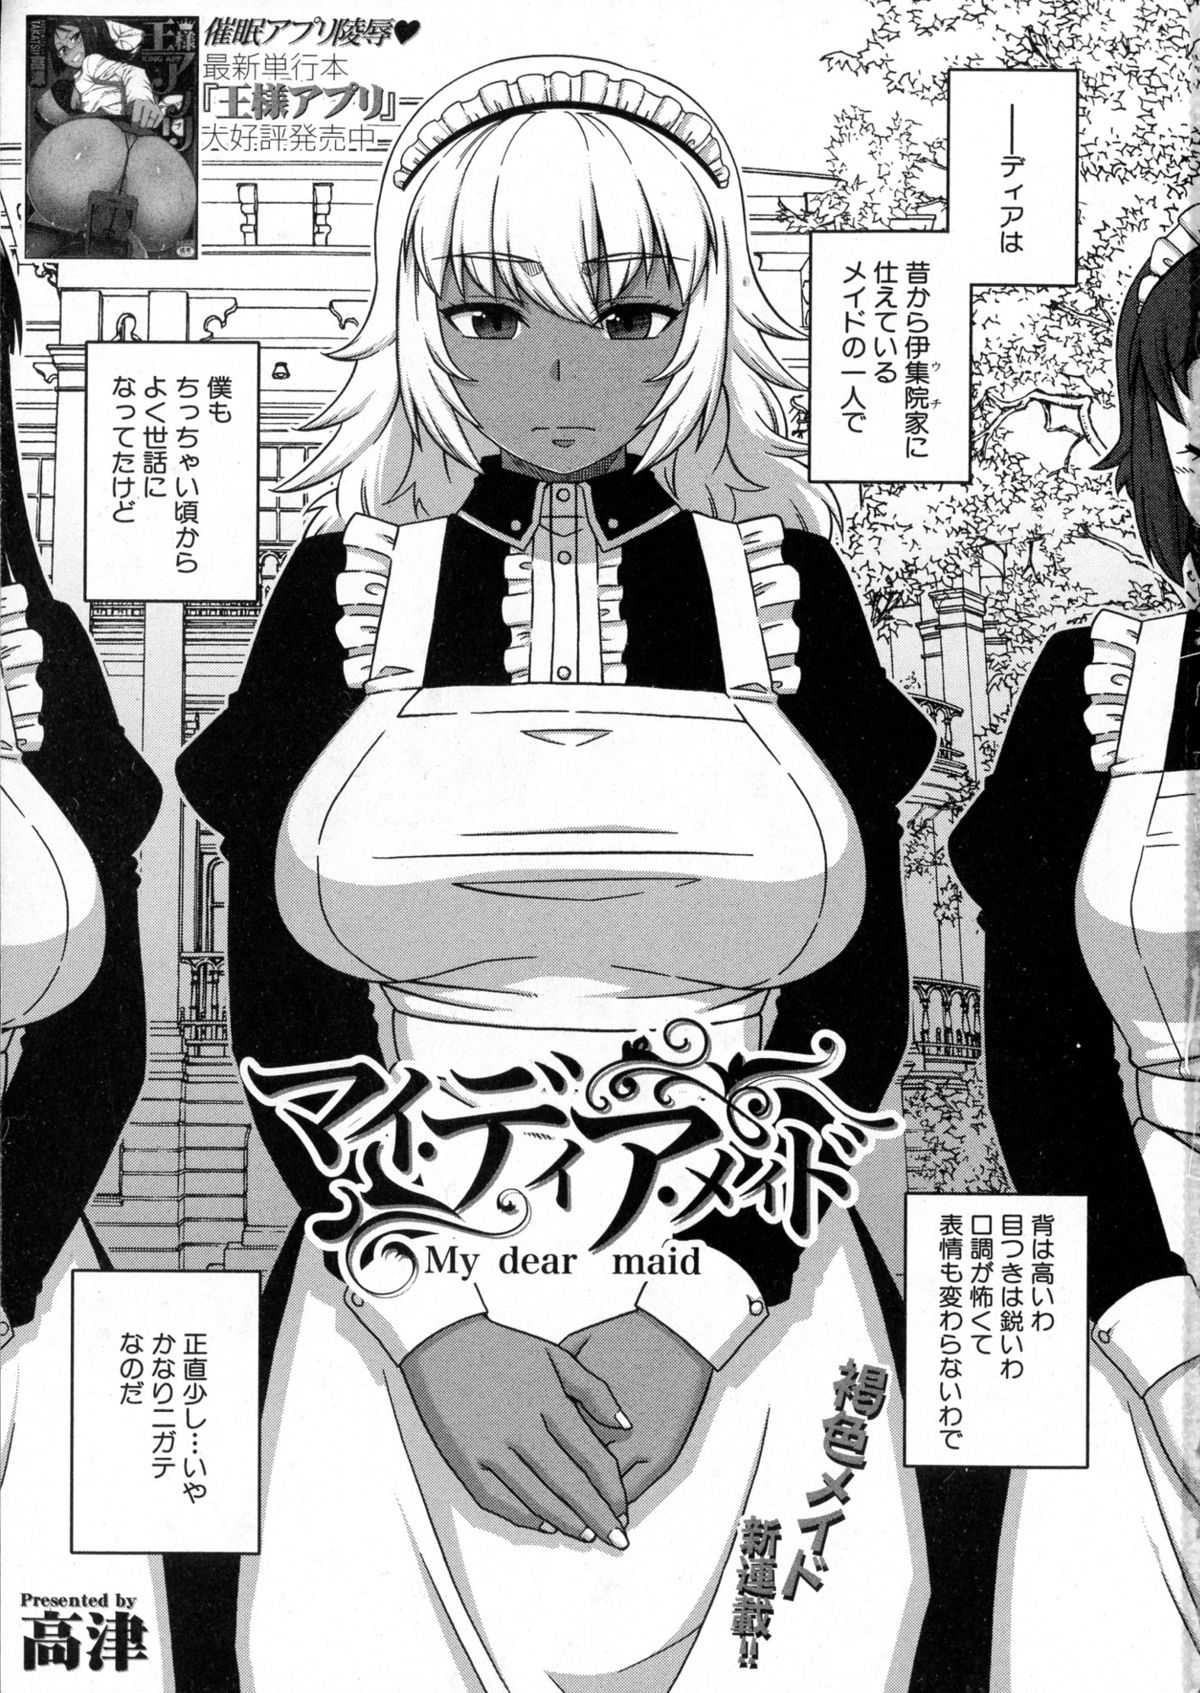 [Takatsu] My Dear Maid Ch. 1-4 page 2 full